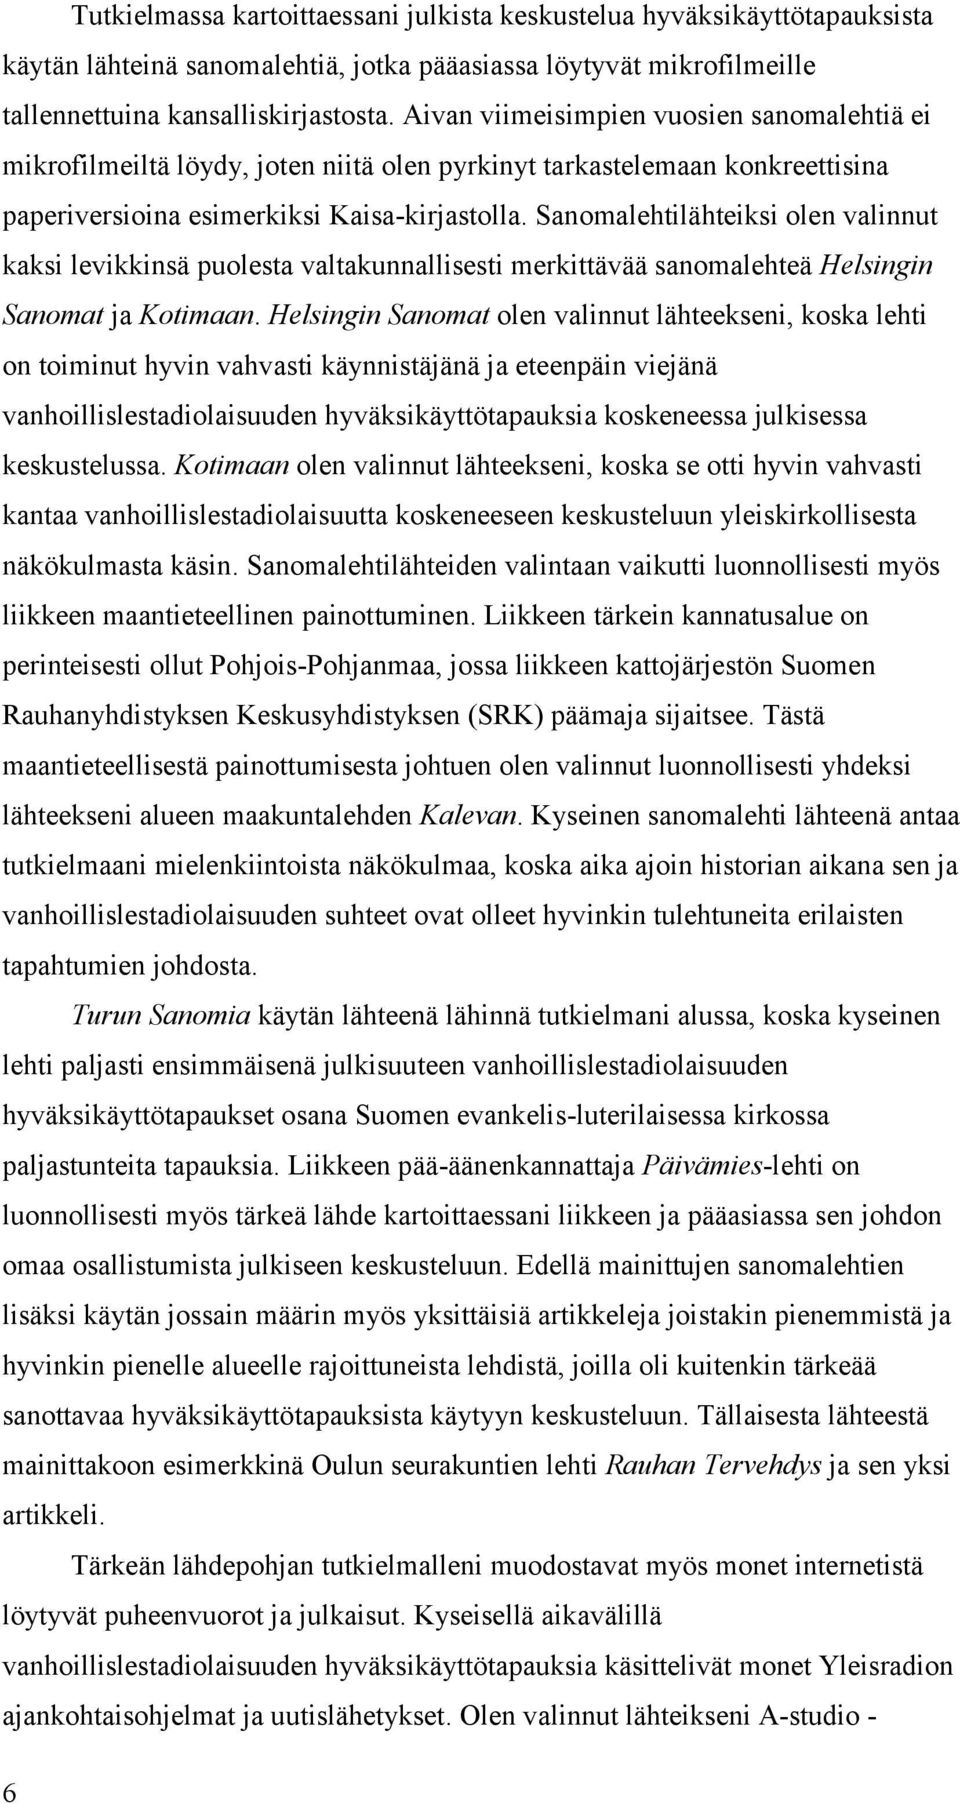 Sanomalehtilähteiksi olen valinnut kaksi levikkinsä puolesta valtakunnallisesti merkittävää sanomalehteä Helsingin Sanomat ja Kotimaan.